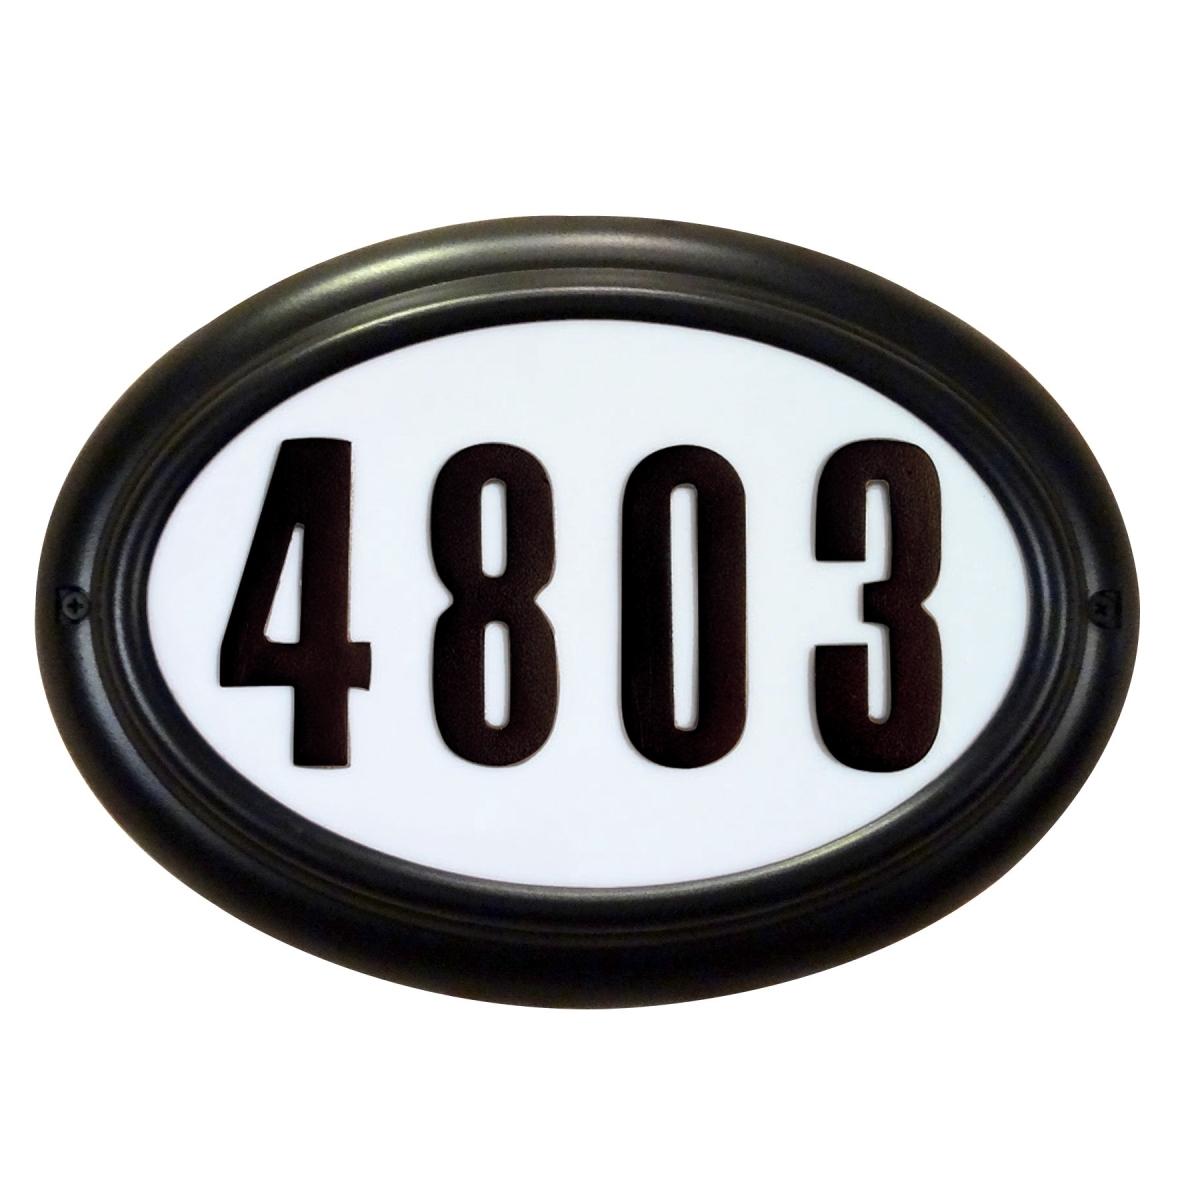 Sap-4210-blk Kingsport Lighted Address Plaque